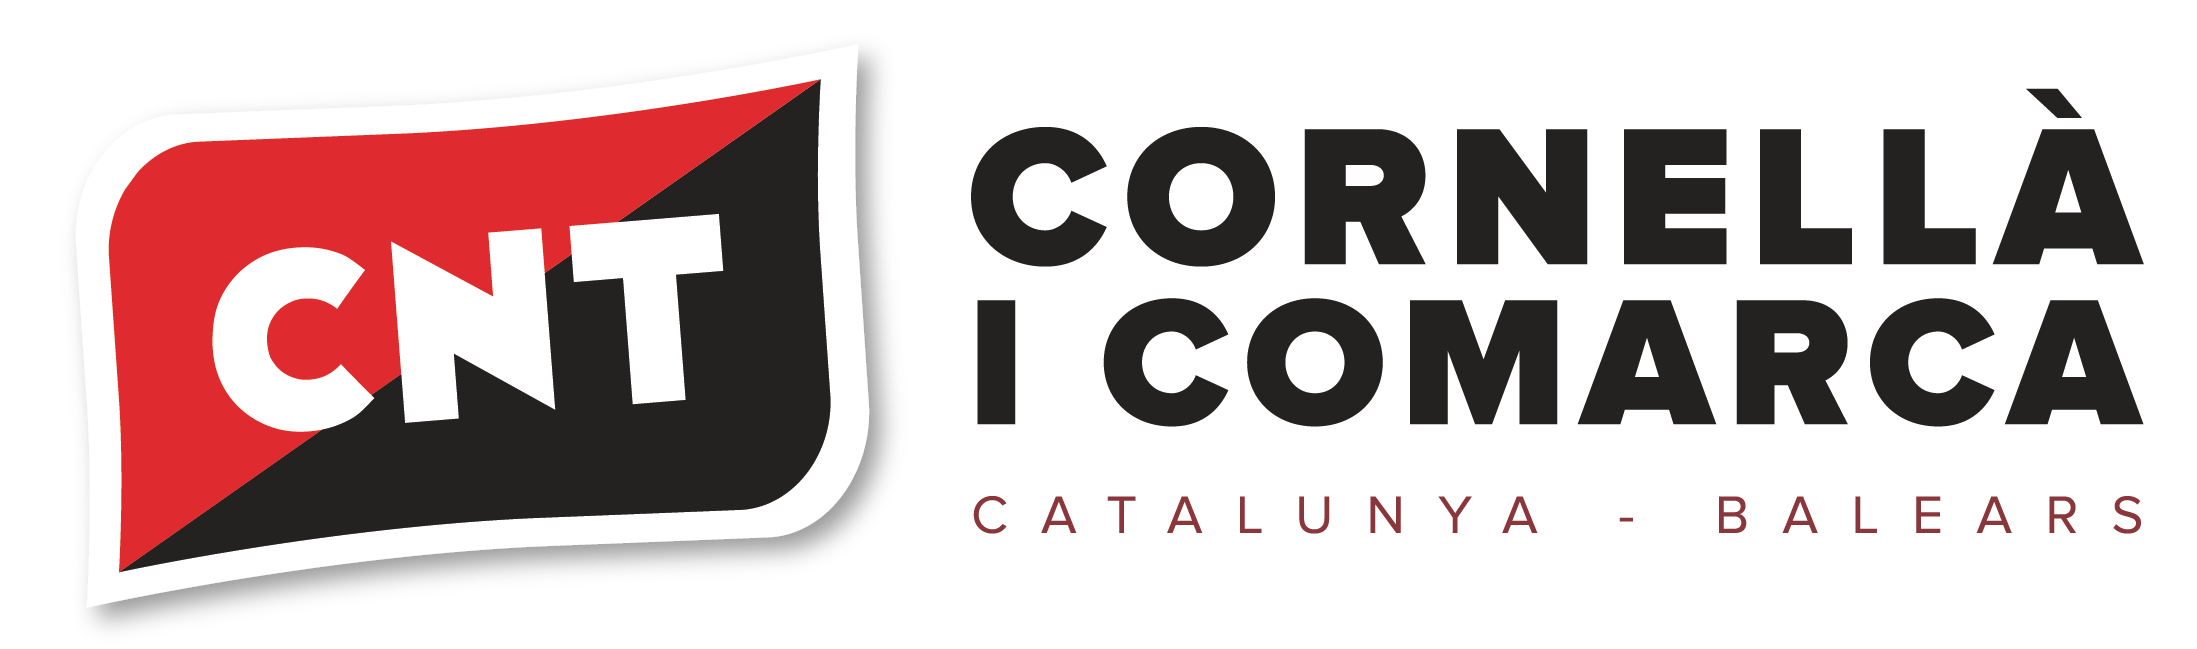 CNT Cornellà i comarca